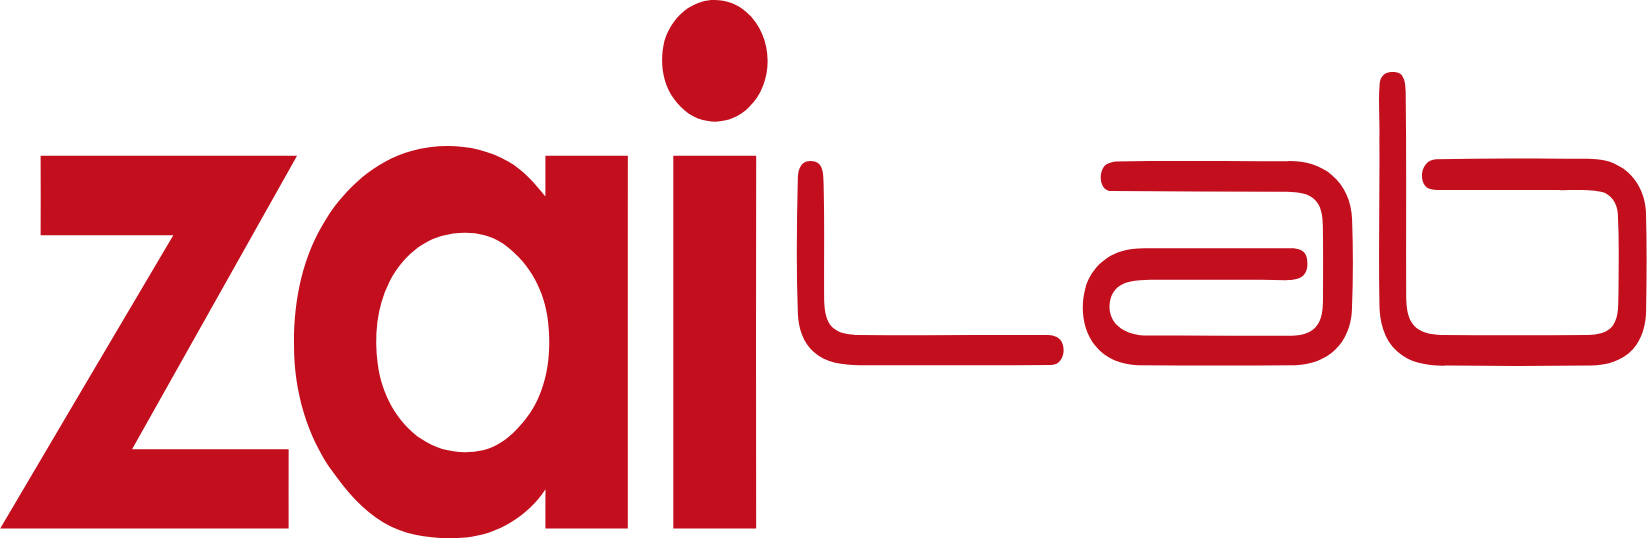 Zai Lab logo large (transparent PNG)